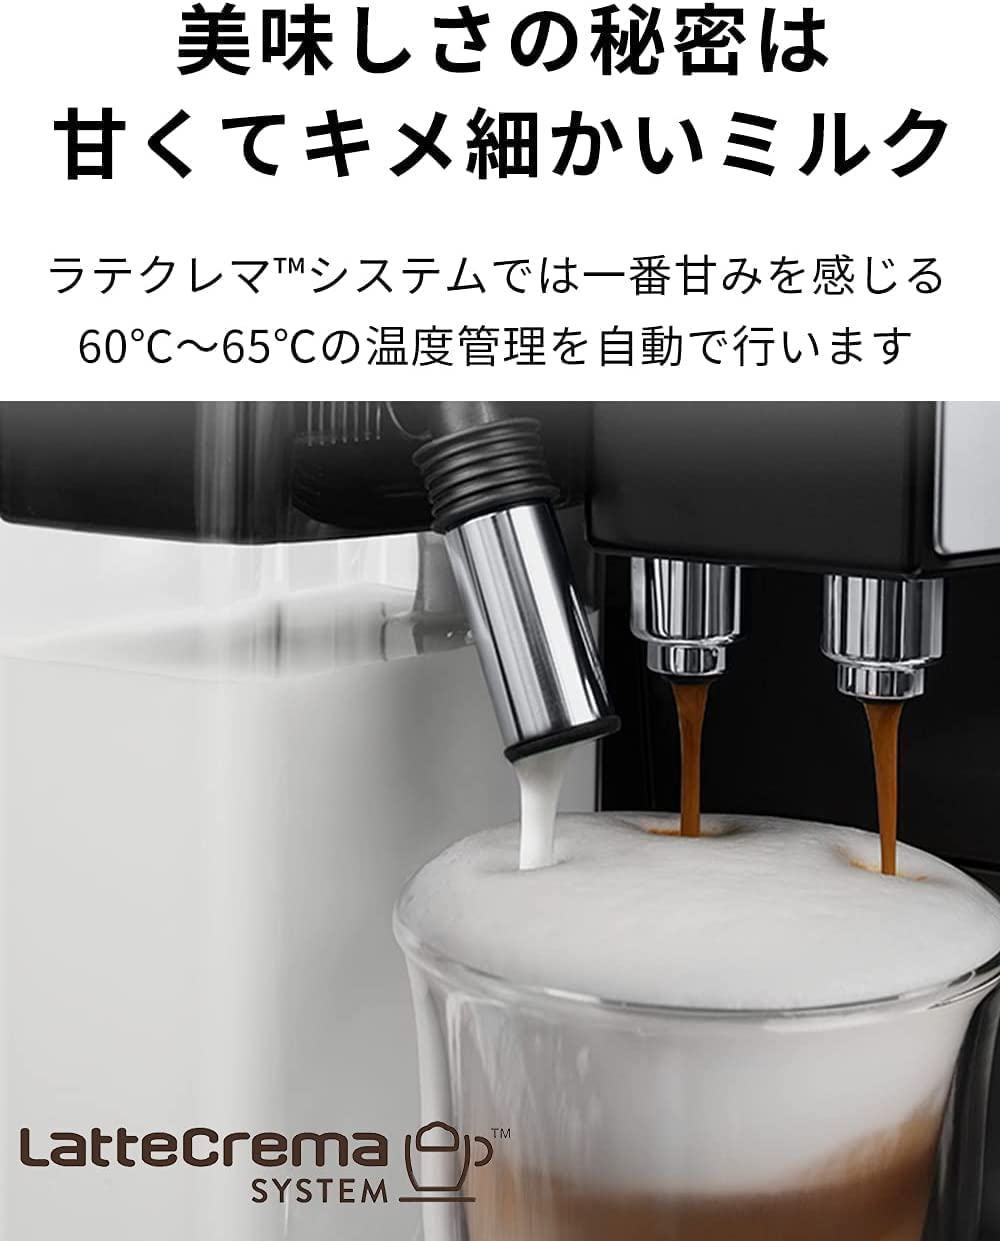 デロンギ(DeLonghi)コンパクト全自動コーヒーメーカー ブラック ...